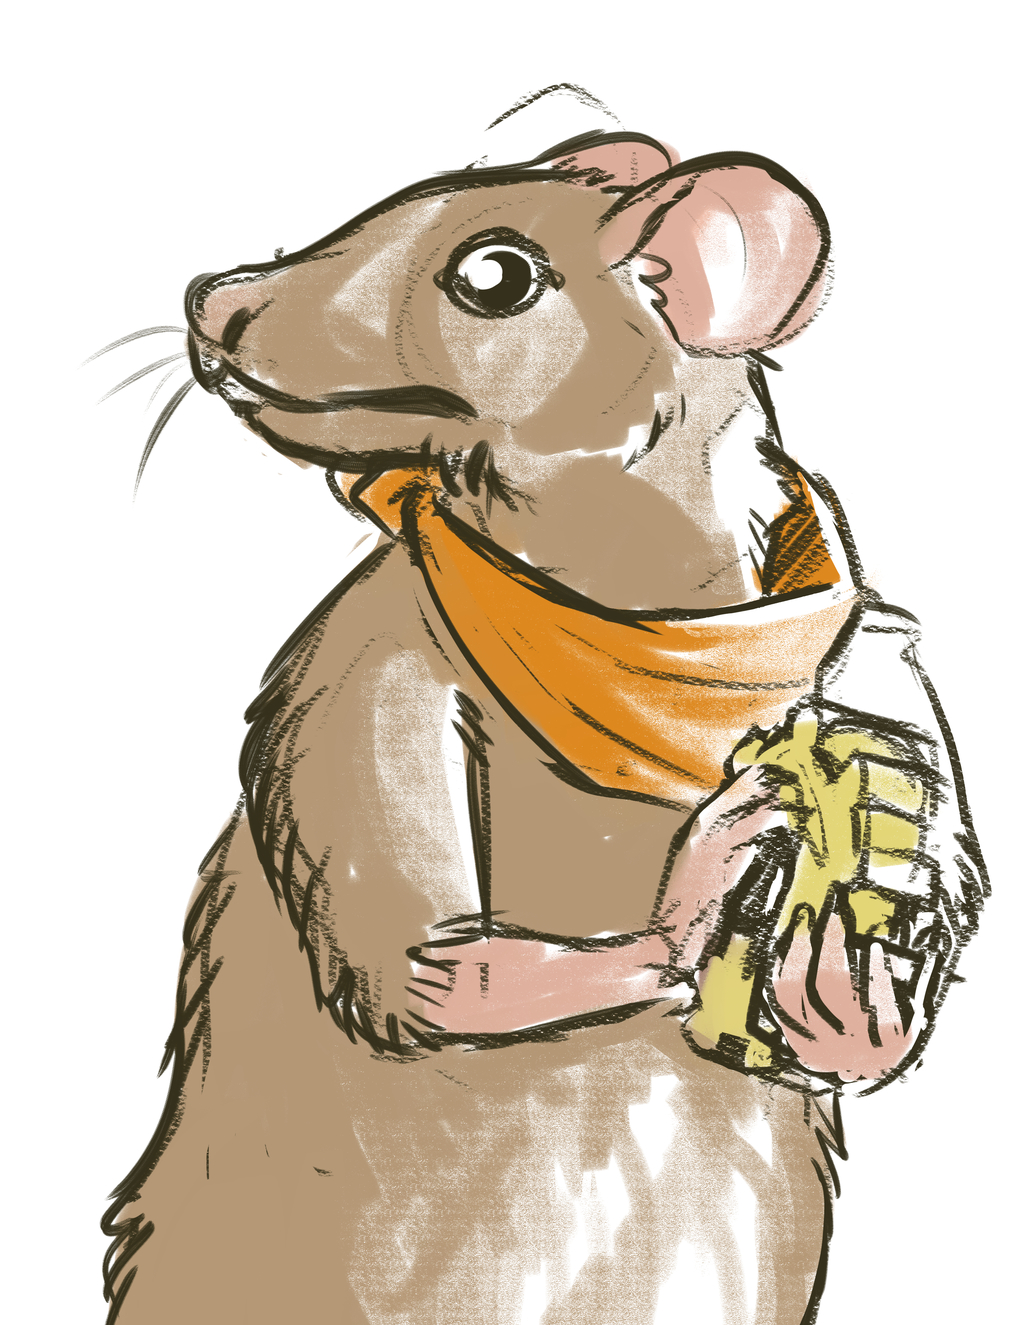 Rat fabber